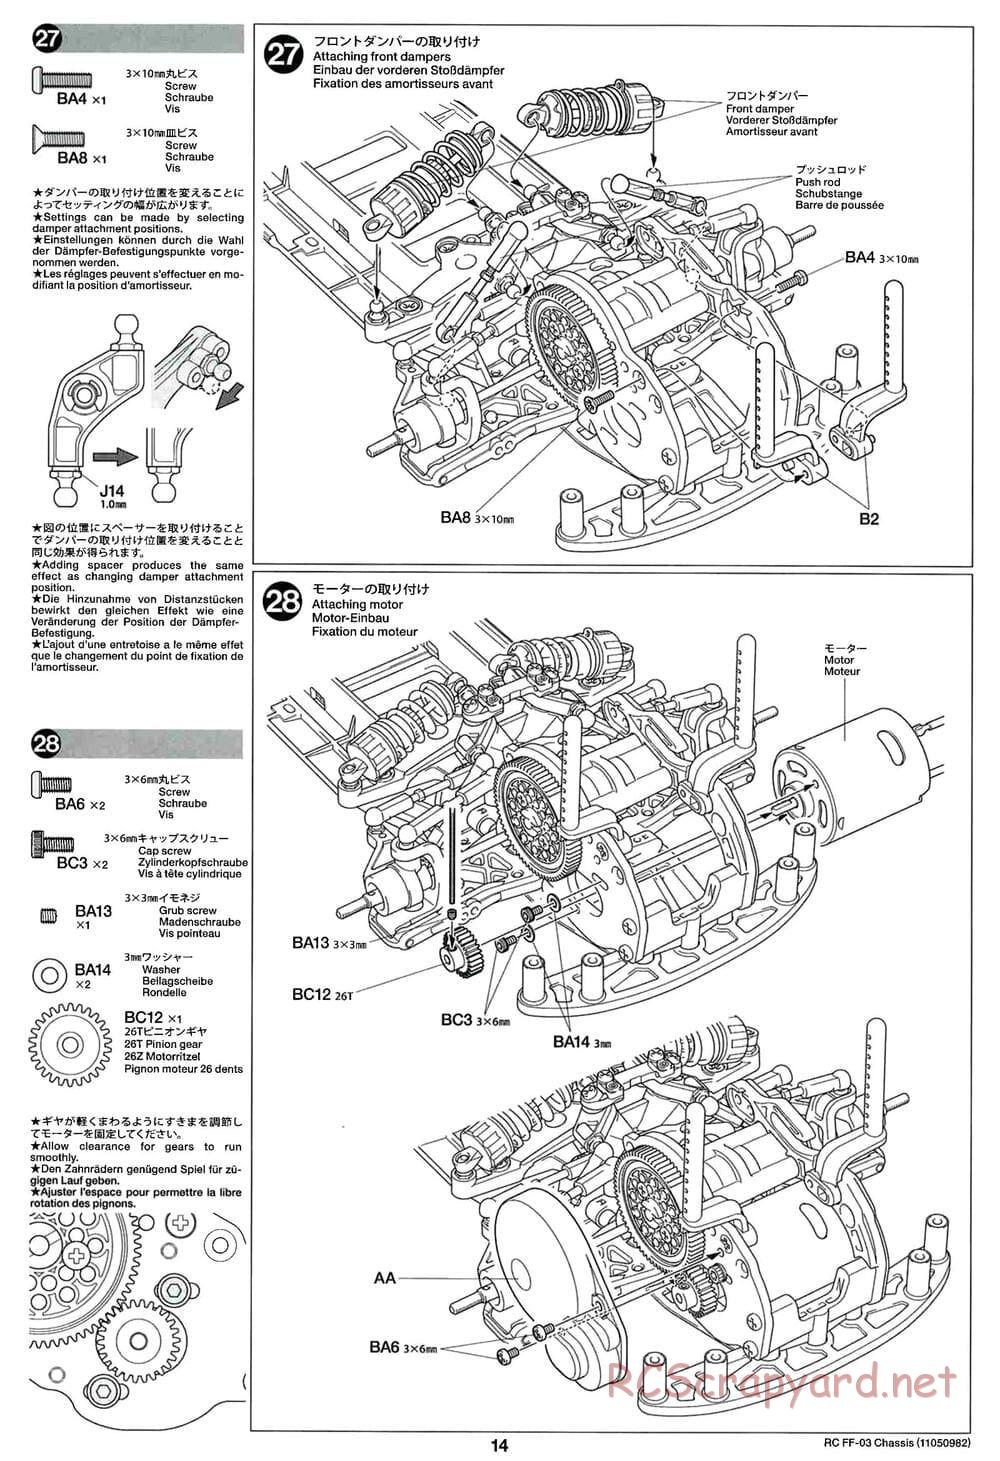 Tamiya - Castrol Honda Civic VTi - FF-03 Chassis - Manual - Page 14